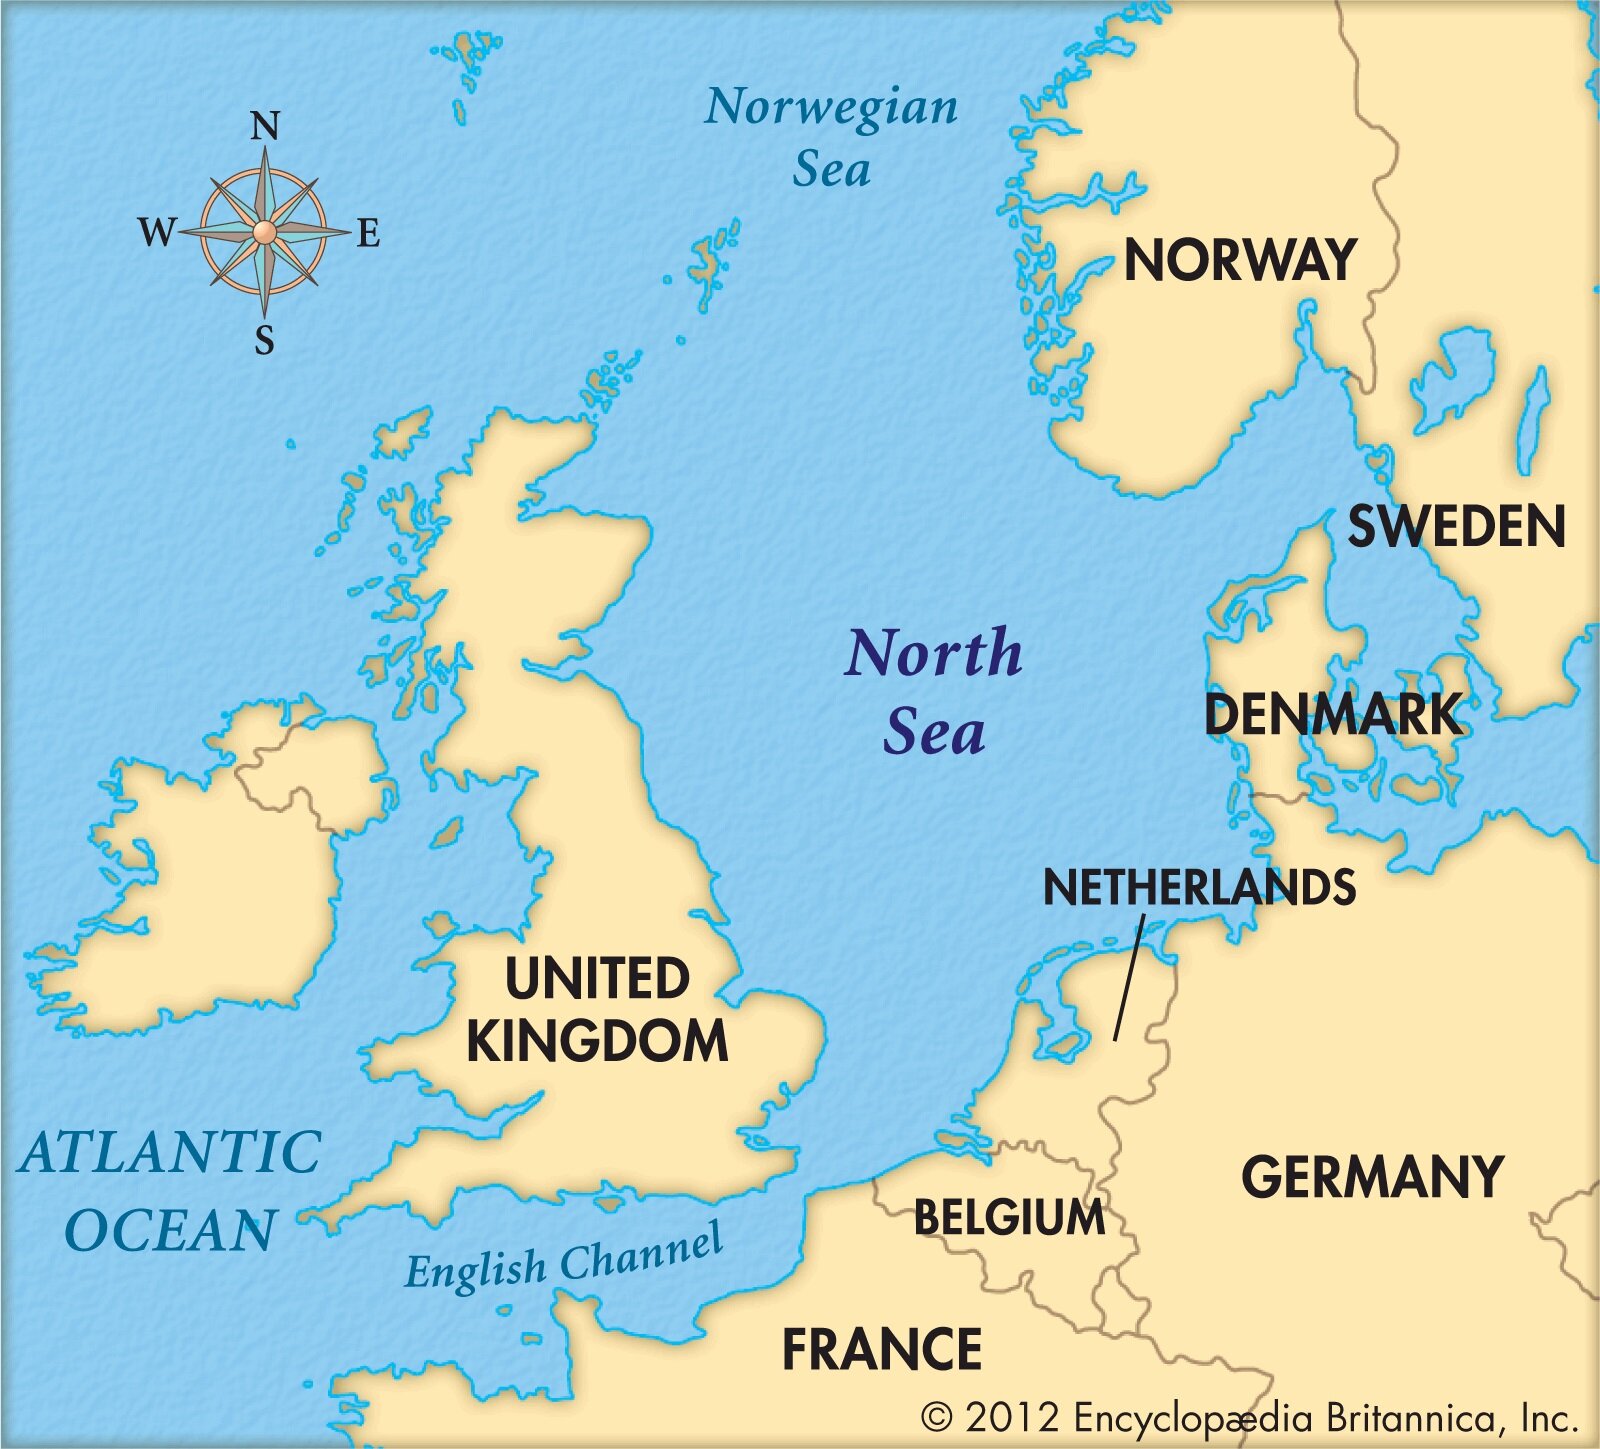 Европа омывается океанами. Северное море на карте Великобритании. Карта Северного моря со странами. North Sea на карте. Северное мореморе на карте.